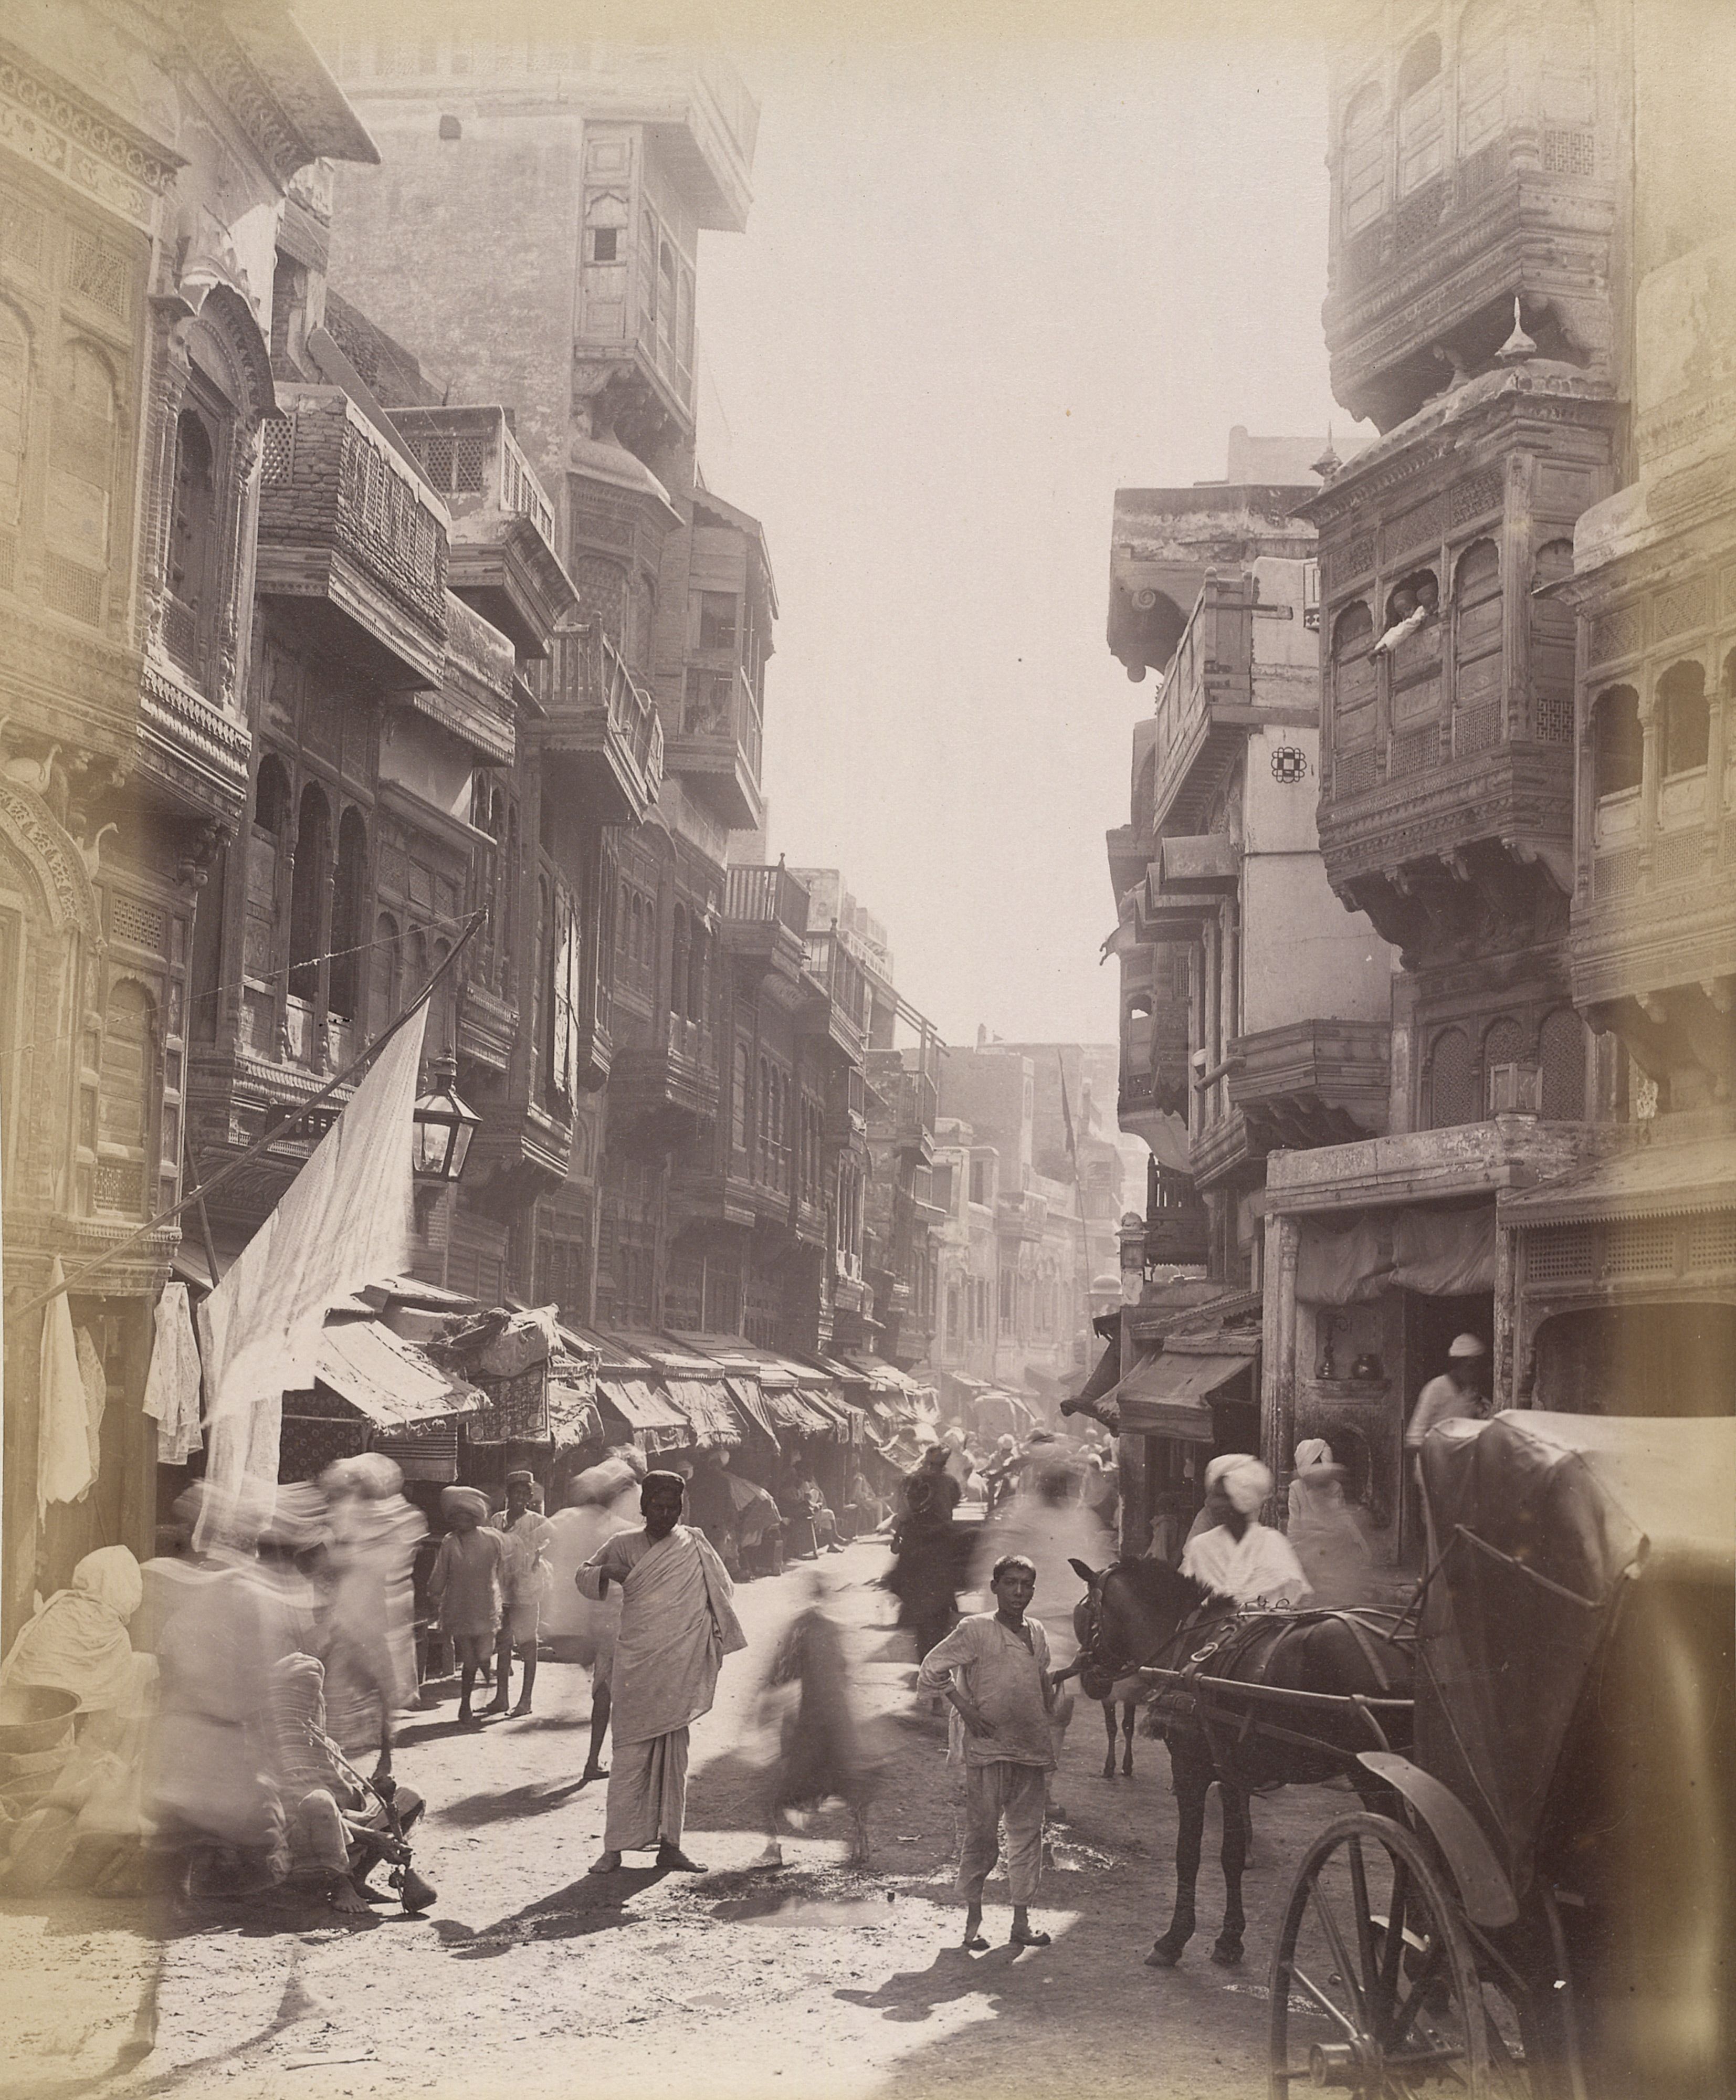 Street_scene_of_Lahore,_1890s_2.jpg